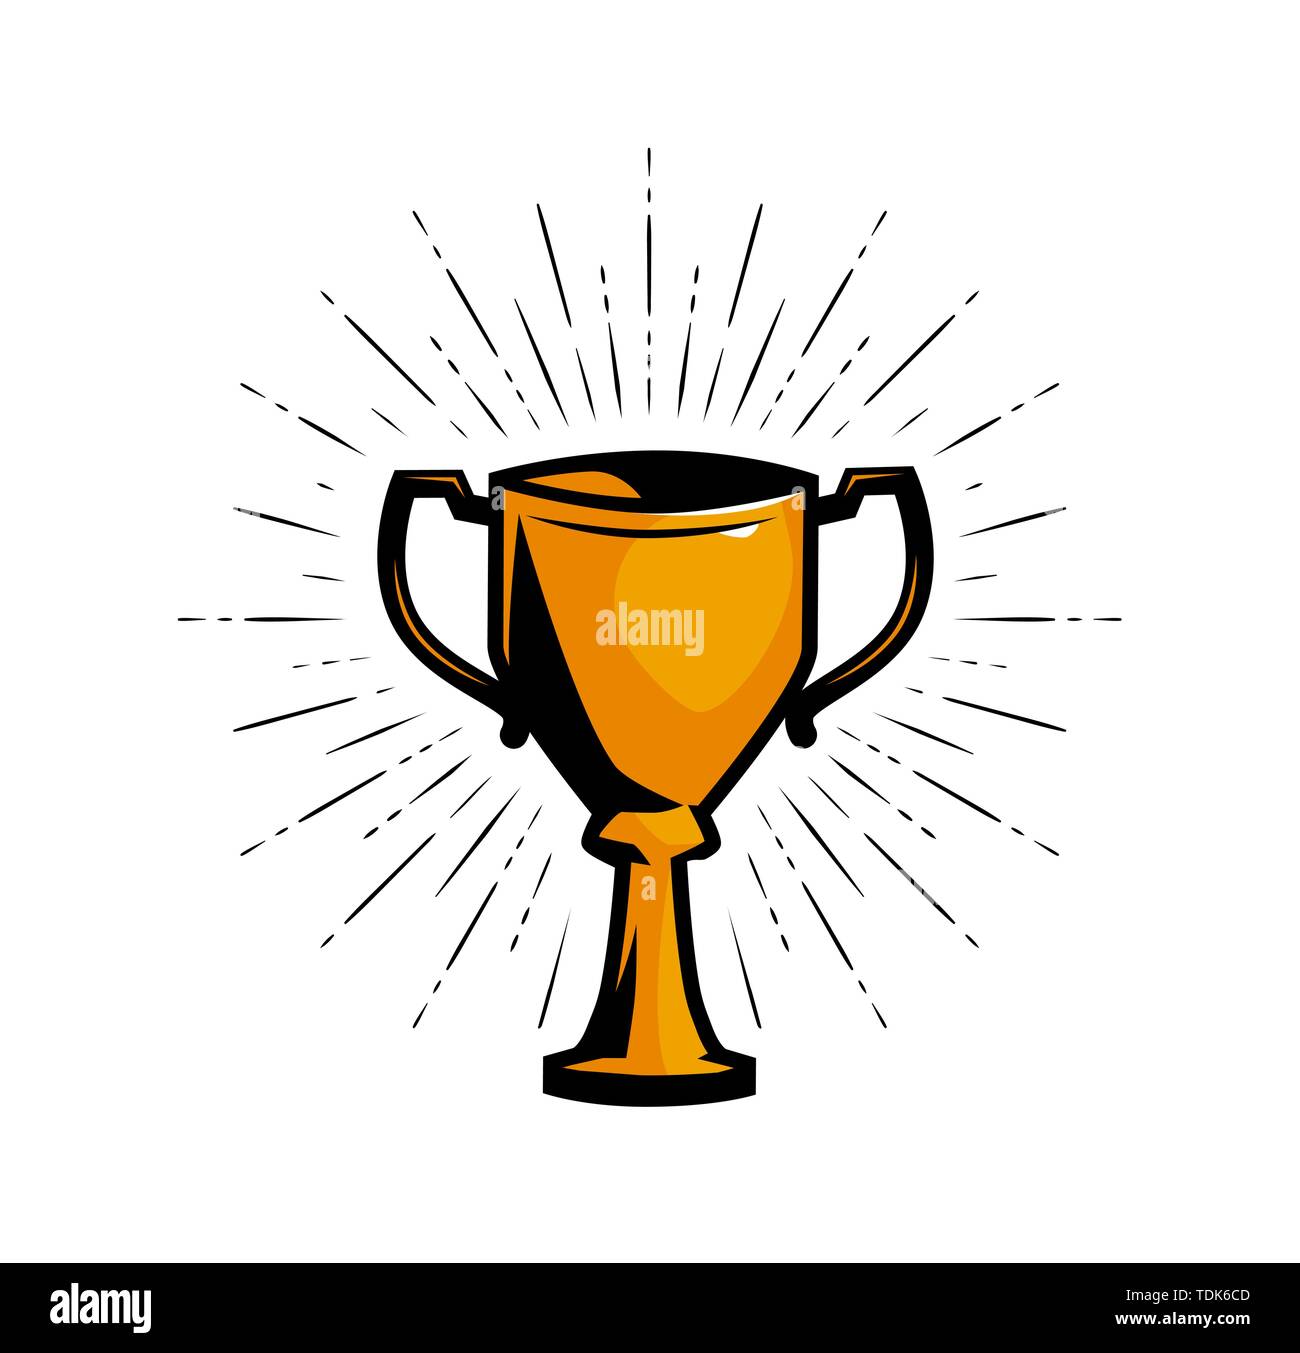 Vainqueur de la coupe d'or, l'achievement award vector illustration Illustration de Vecteur